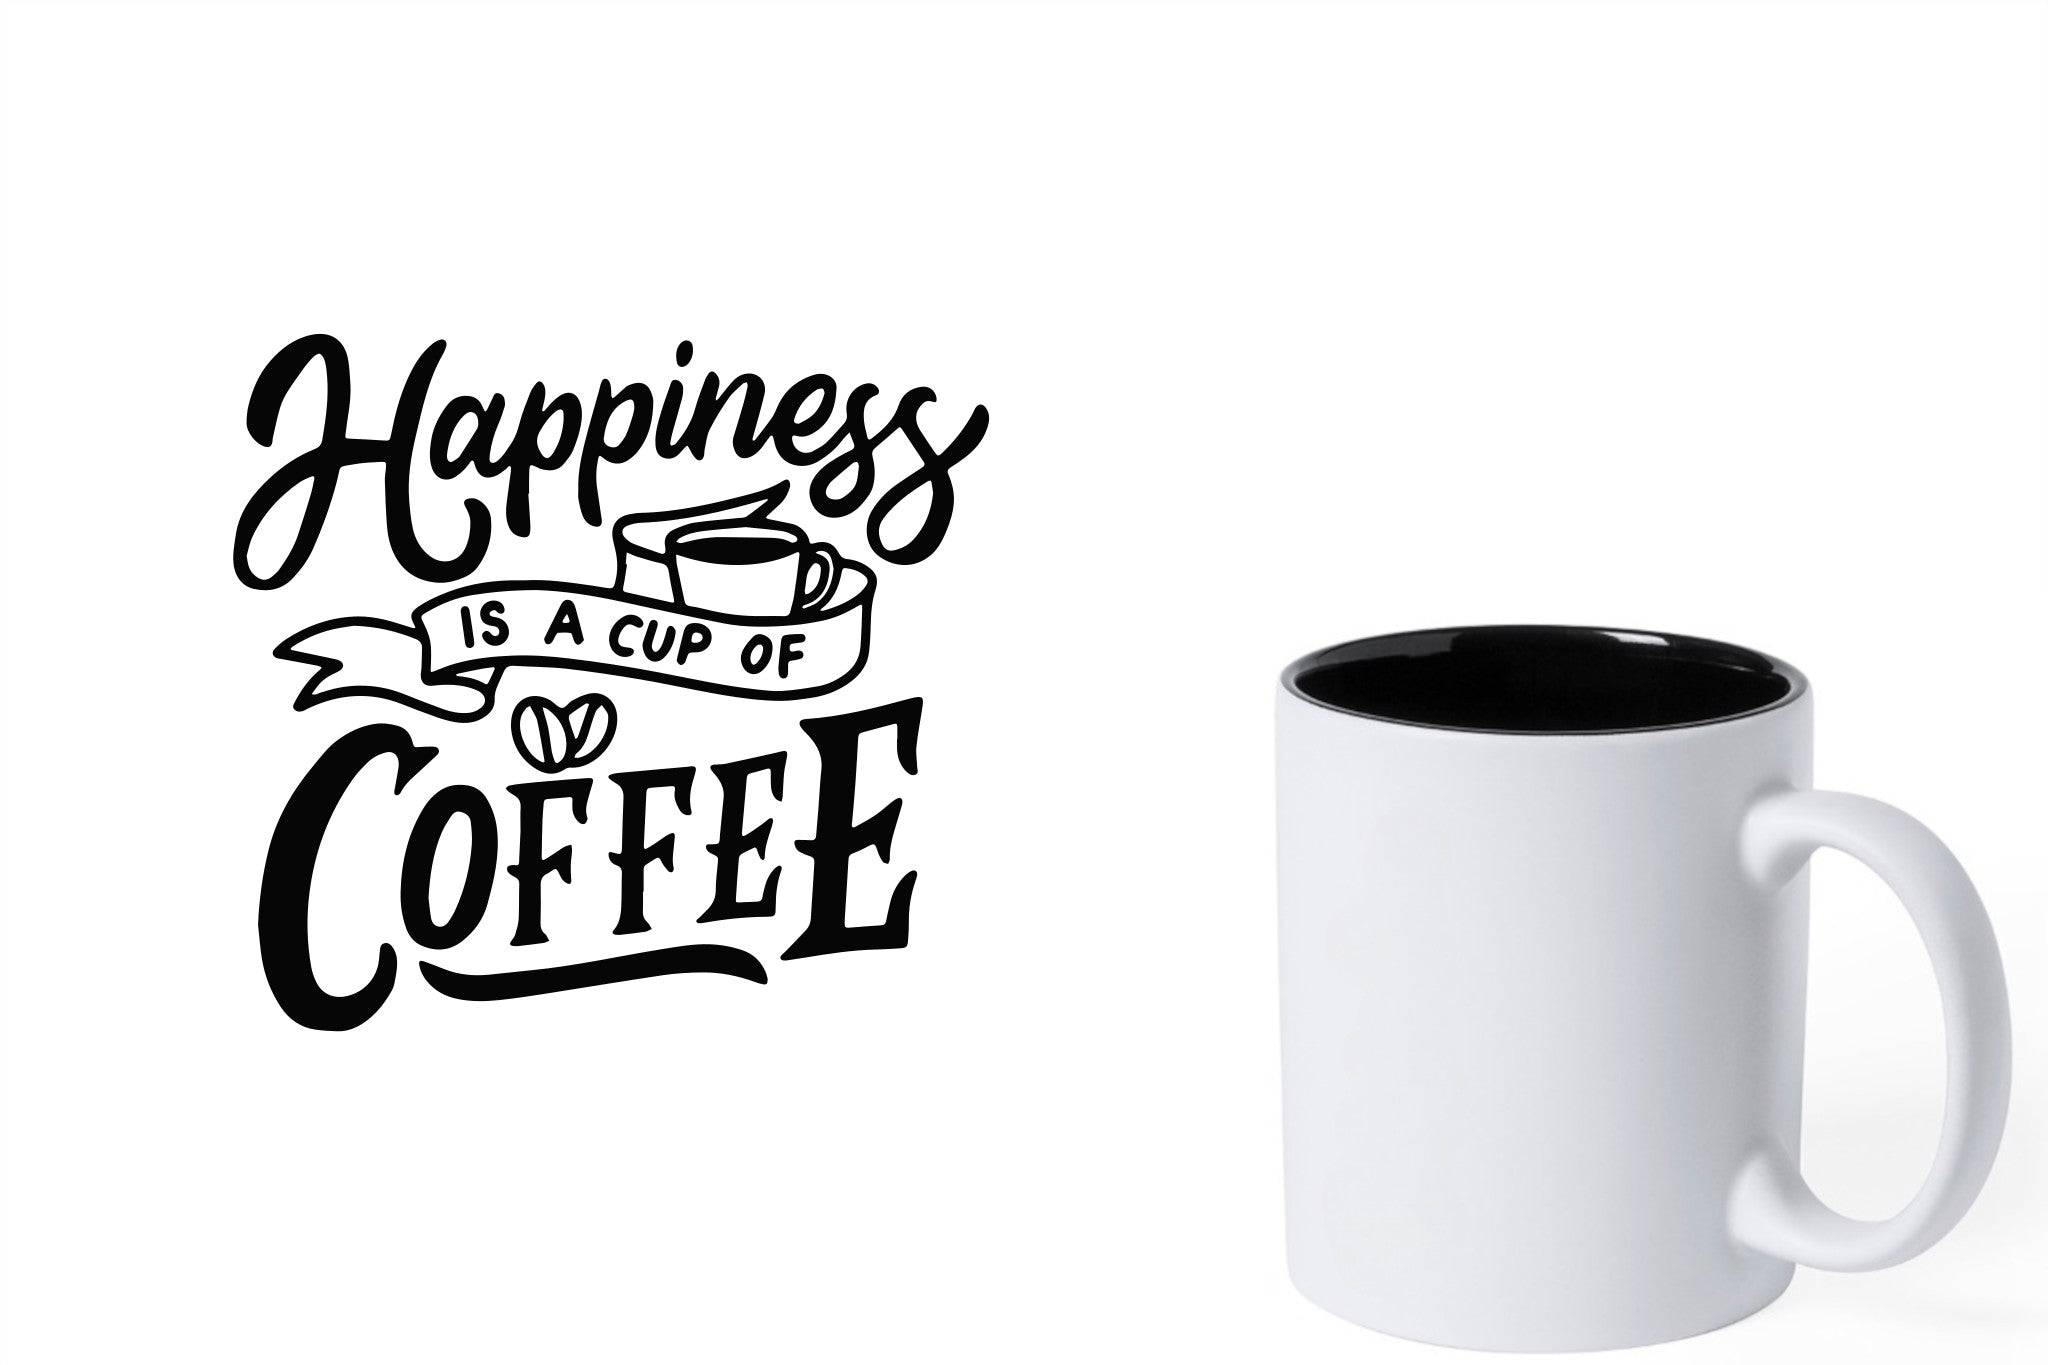 Witte keramische mok met zwarte gravure  'Happiness is a cup of coffee'.